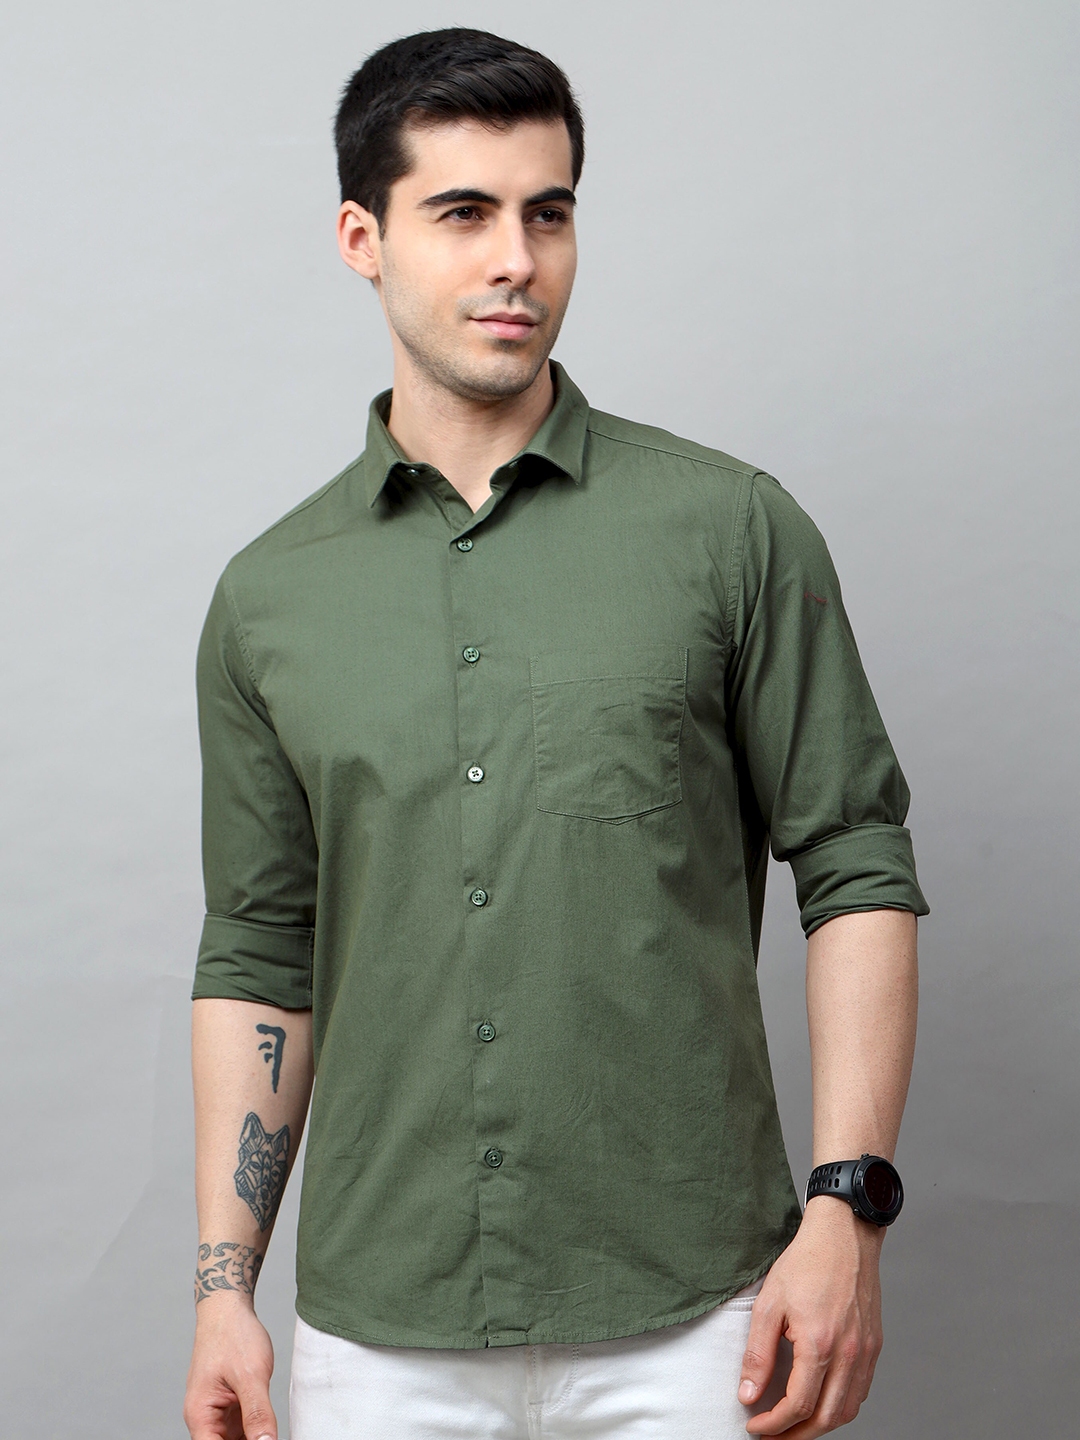 Buy Bushirt Men Green Solid Comfort Casual Pure Cotton Shirt - Shirts ...